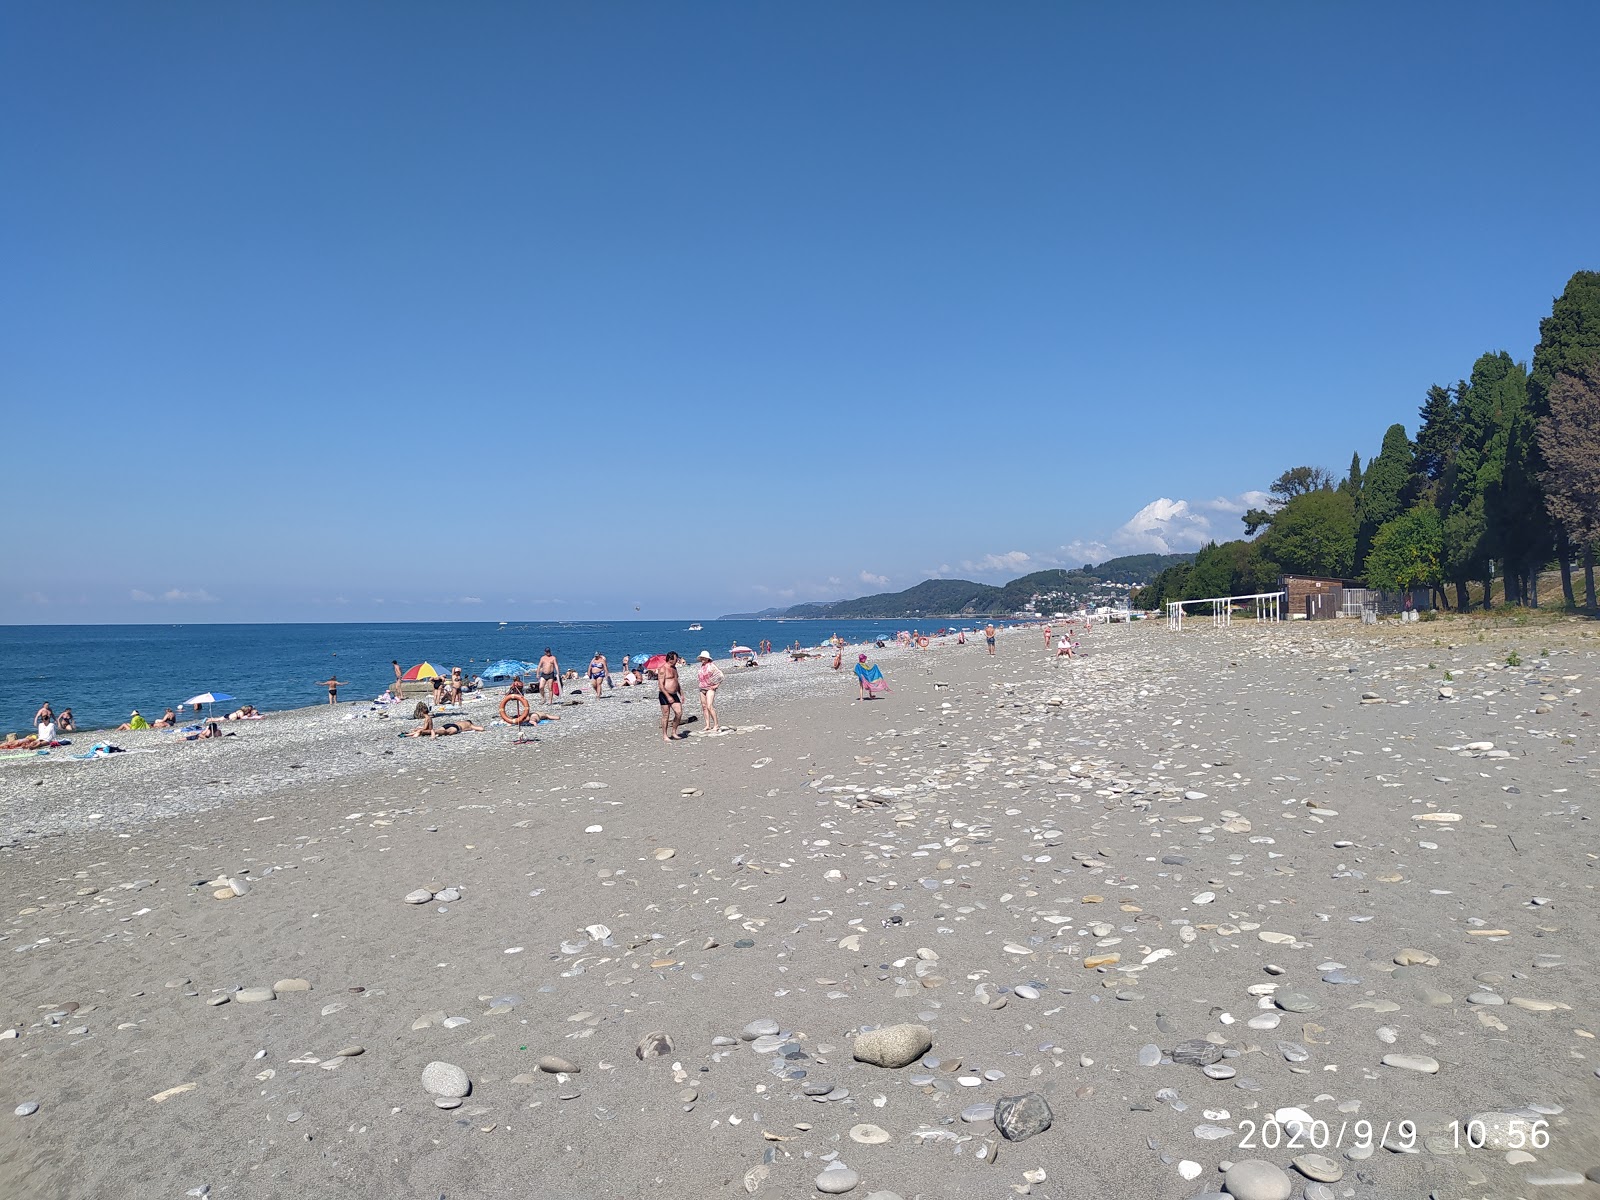 Photo de Loo beach - endroit populaire parmi les connaisseurs de la détente